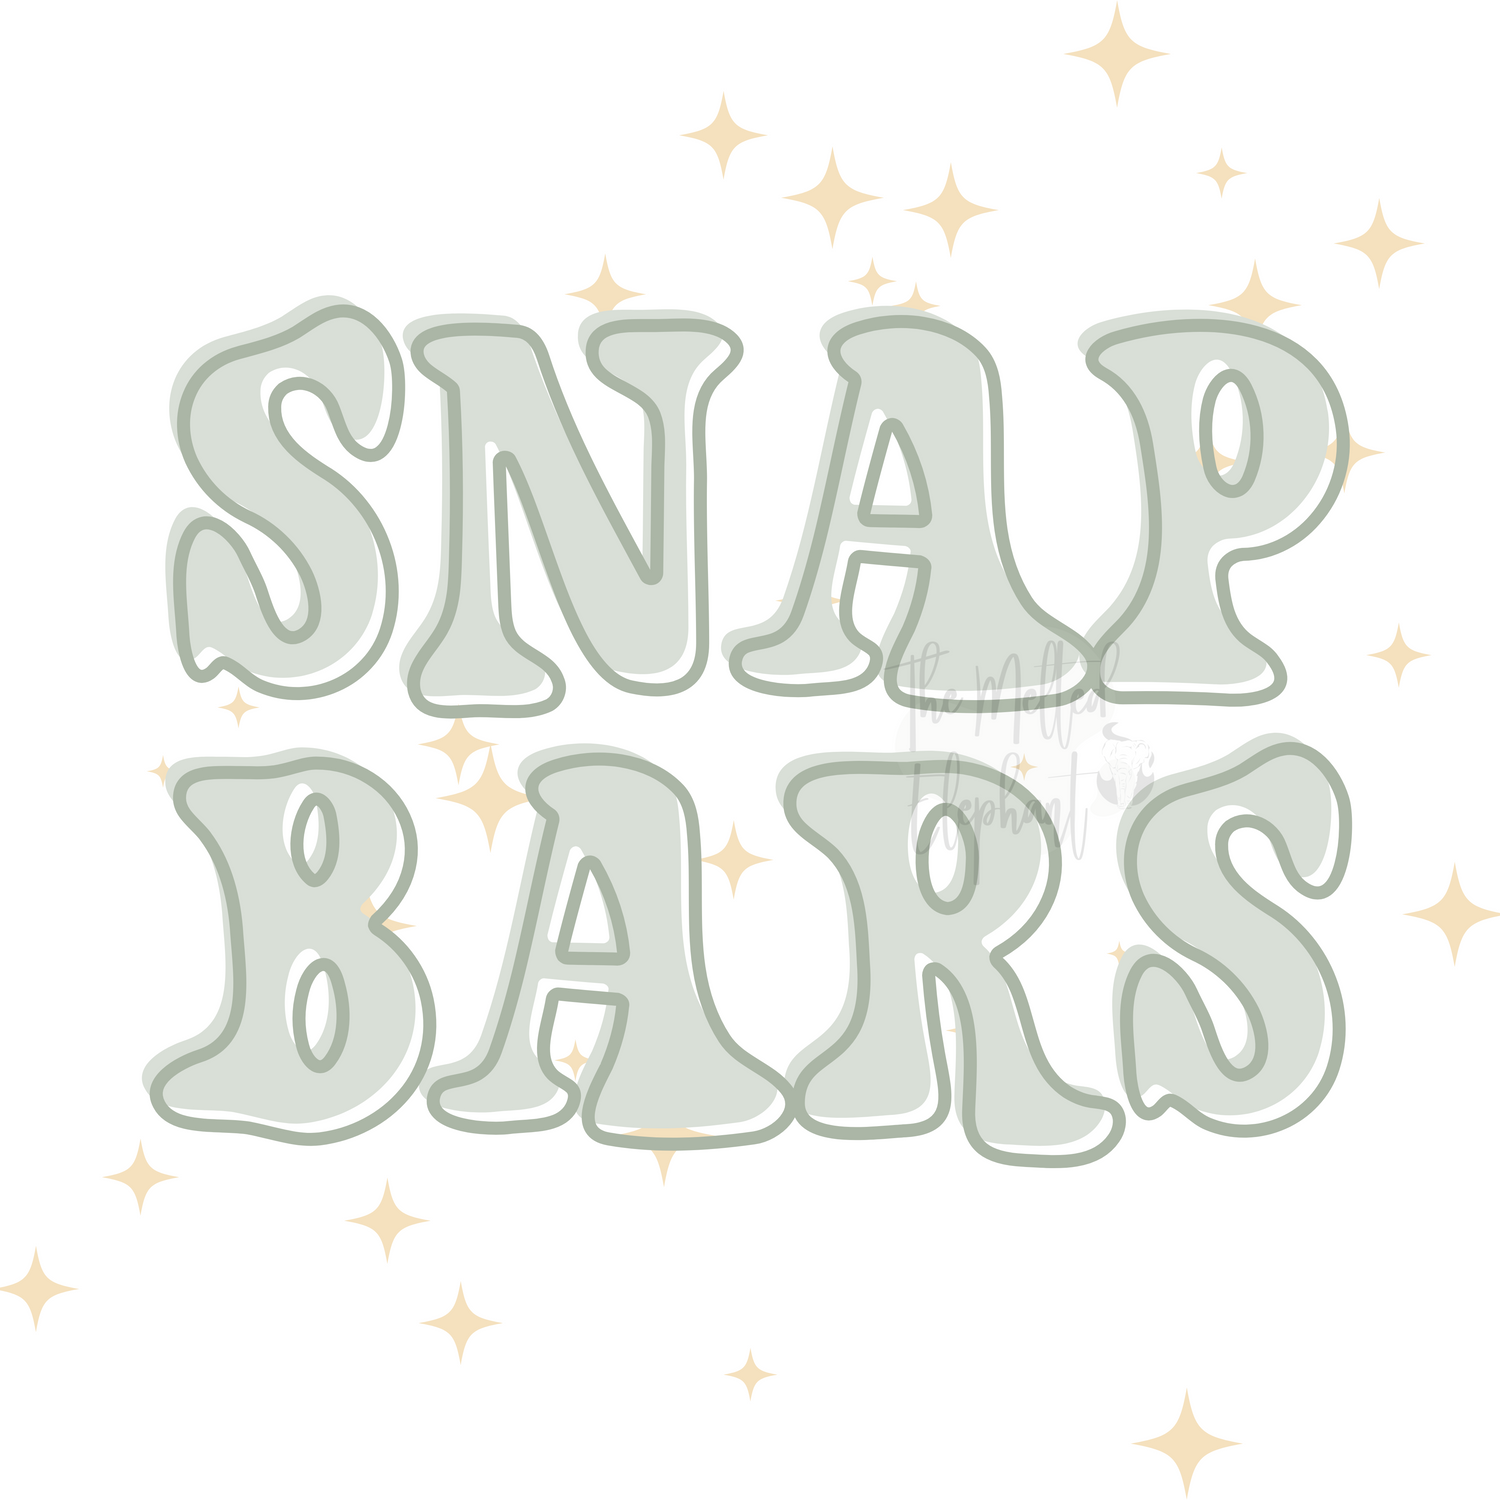 Snap Bars